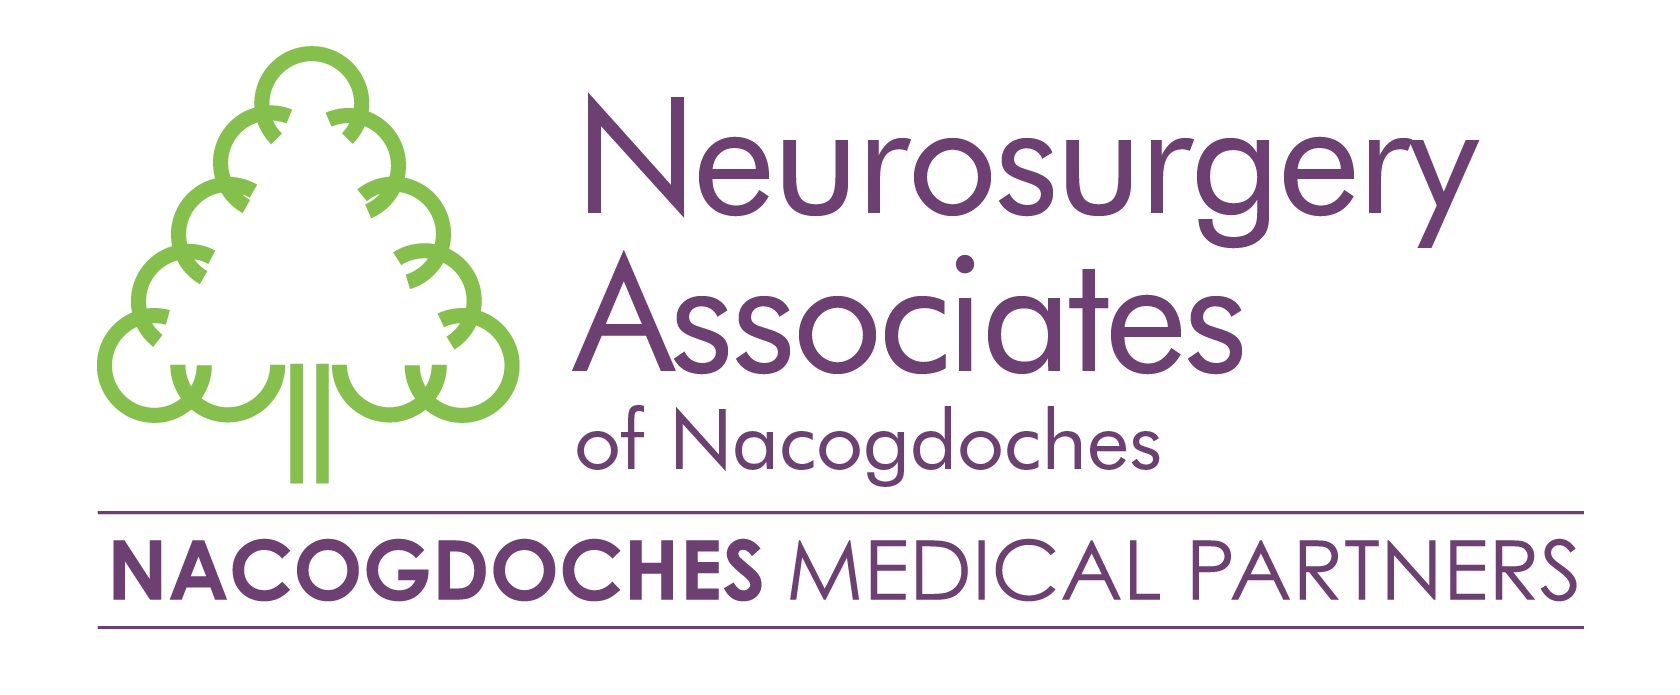 (Select) Neurosurgery Associates of Nacogdoches